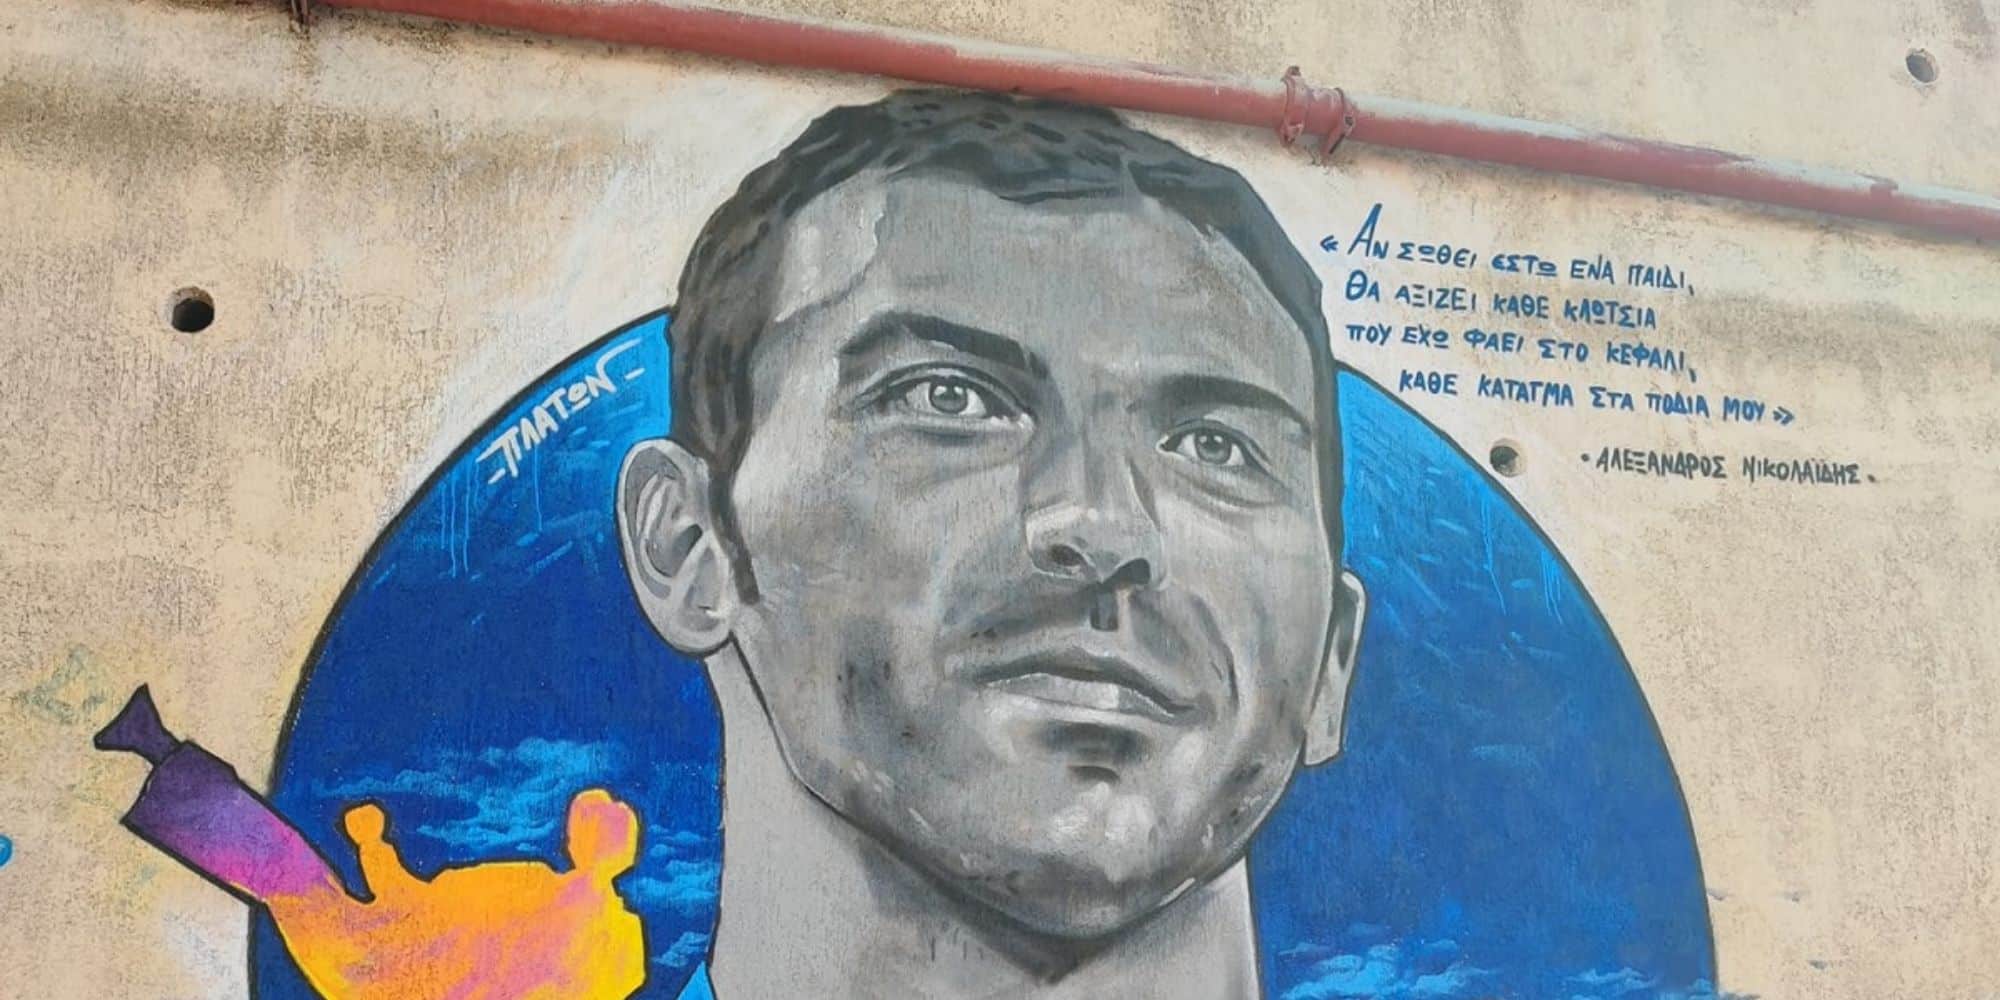 Αλέξανδρος Νικολαΐδης: Εντυπωσιακό mural έξω από το κολυμβητήριο του Βύρωνα (εικόνα)